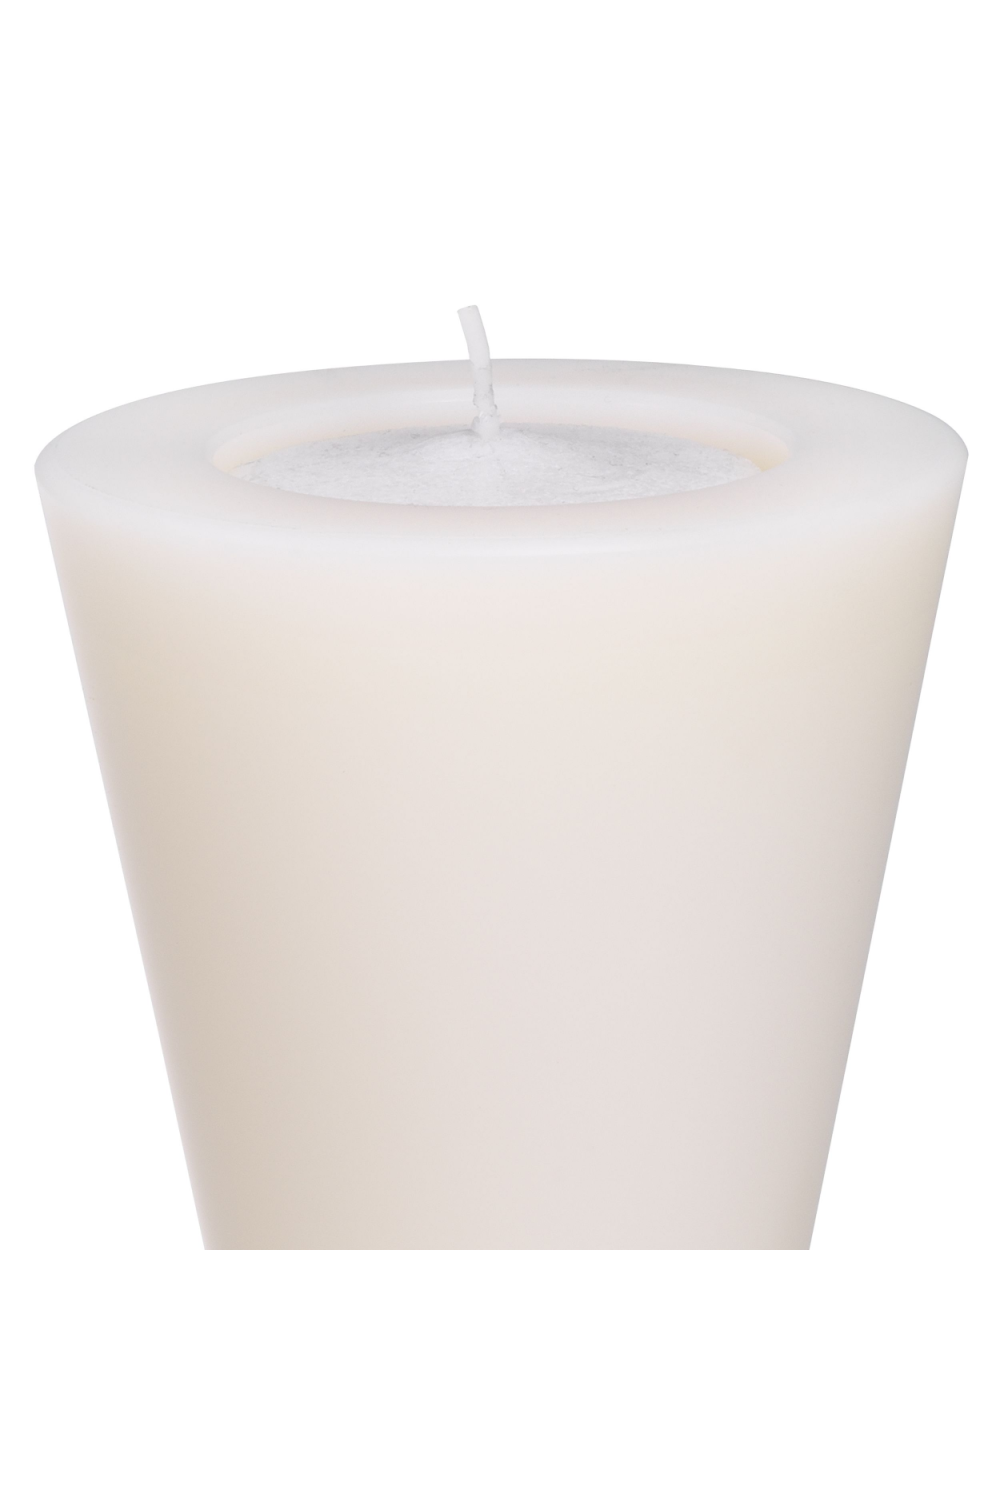 White Artificial Candle L (2) | Eichholtz Arto | OROA